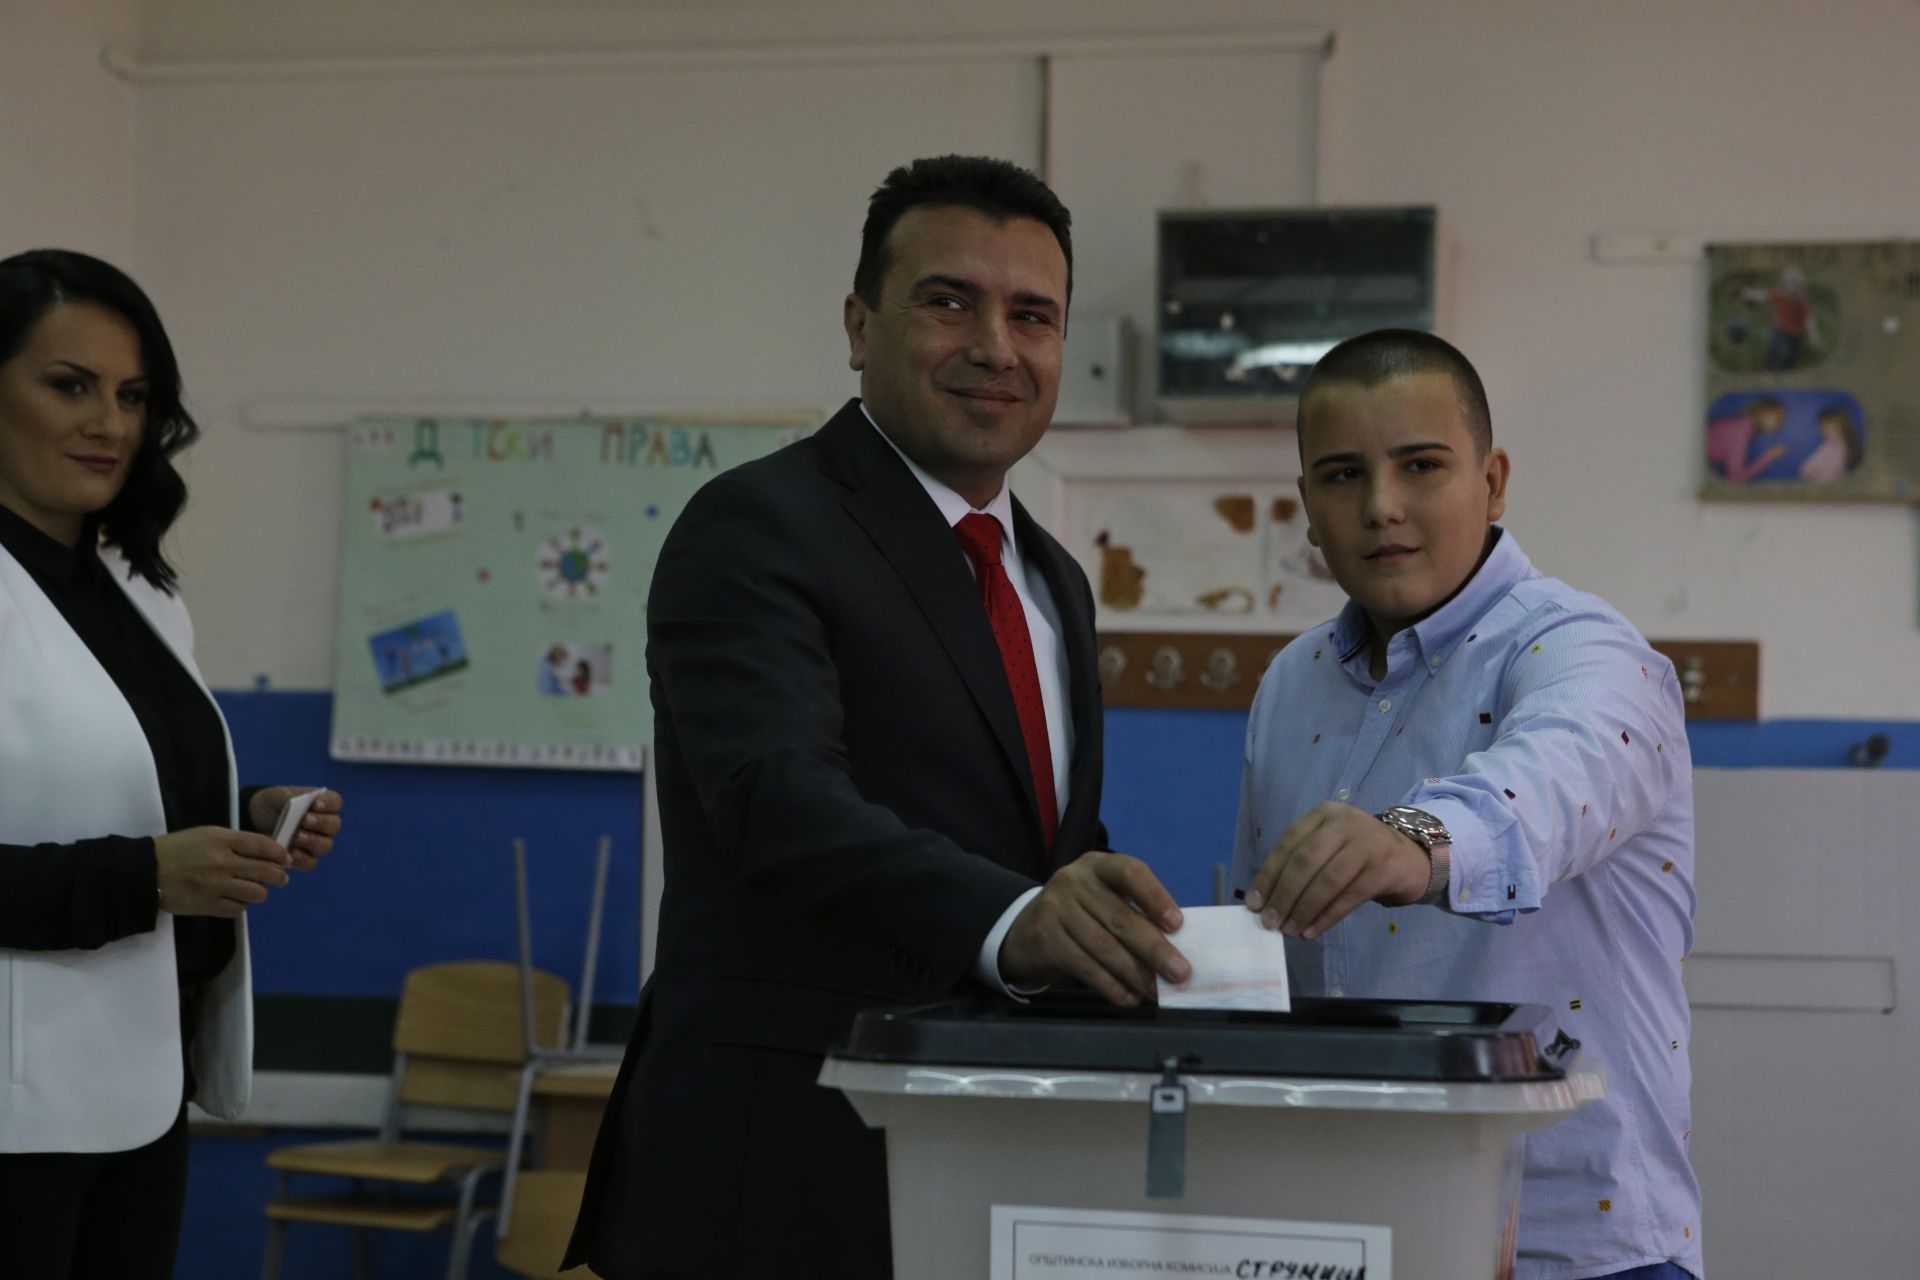 Заев пусна гласа си в Струмица в югоизточната част на страната и призова сънародниците си да излязат и да гласуват масово